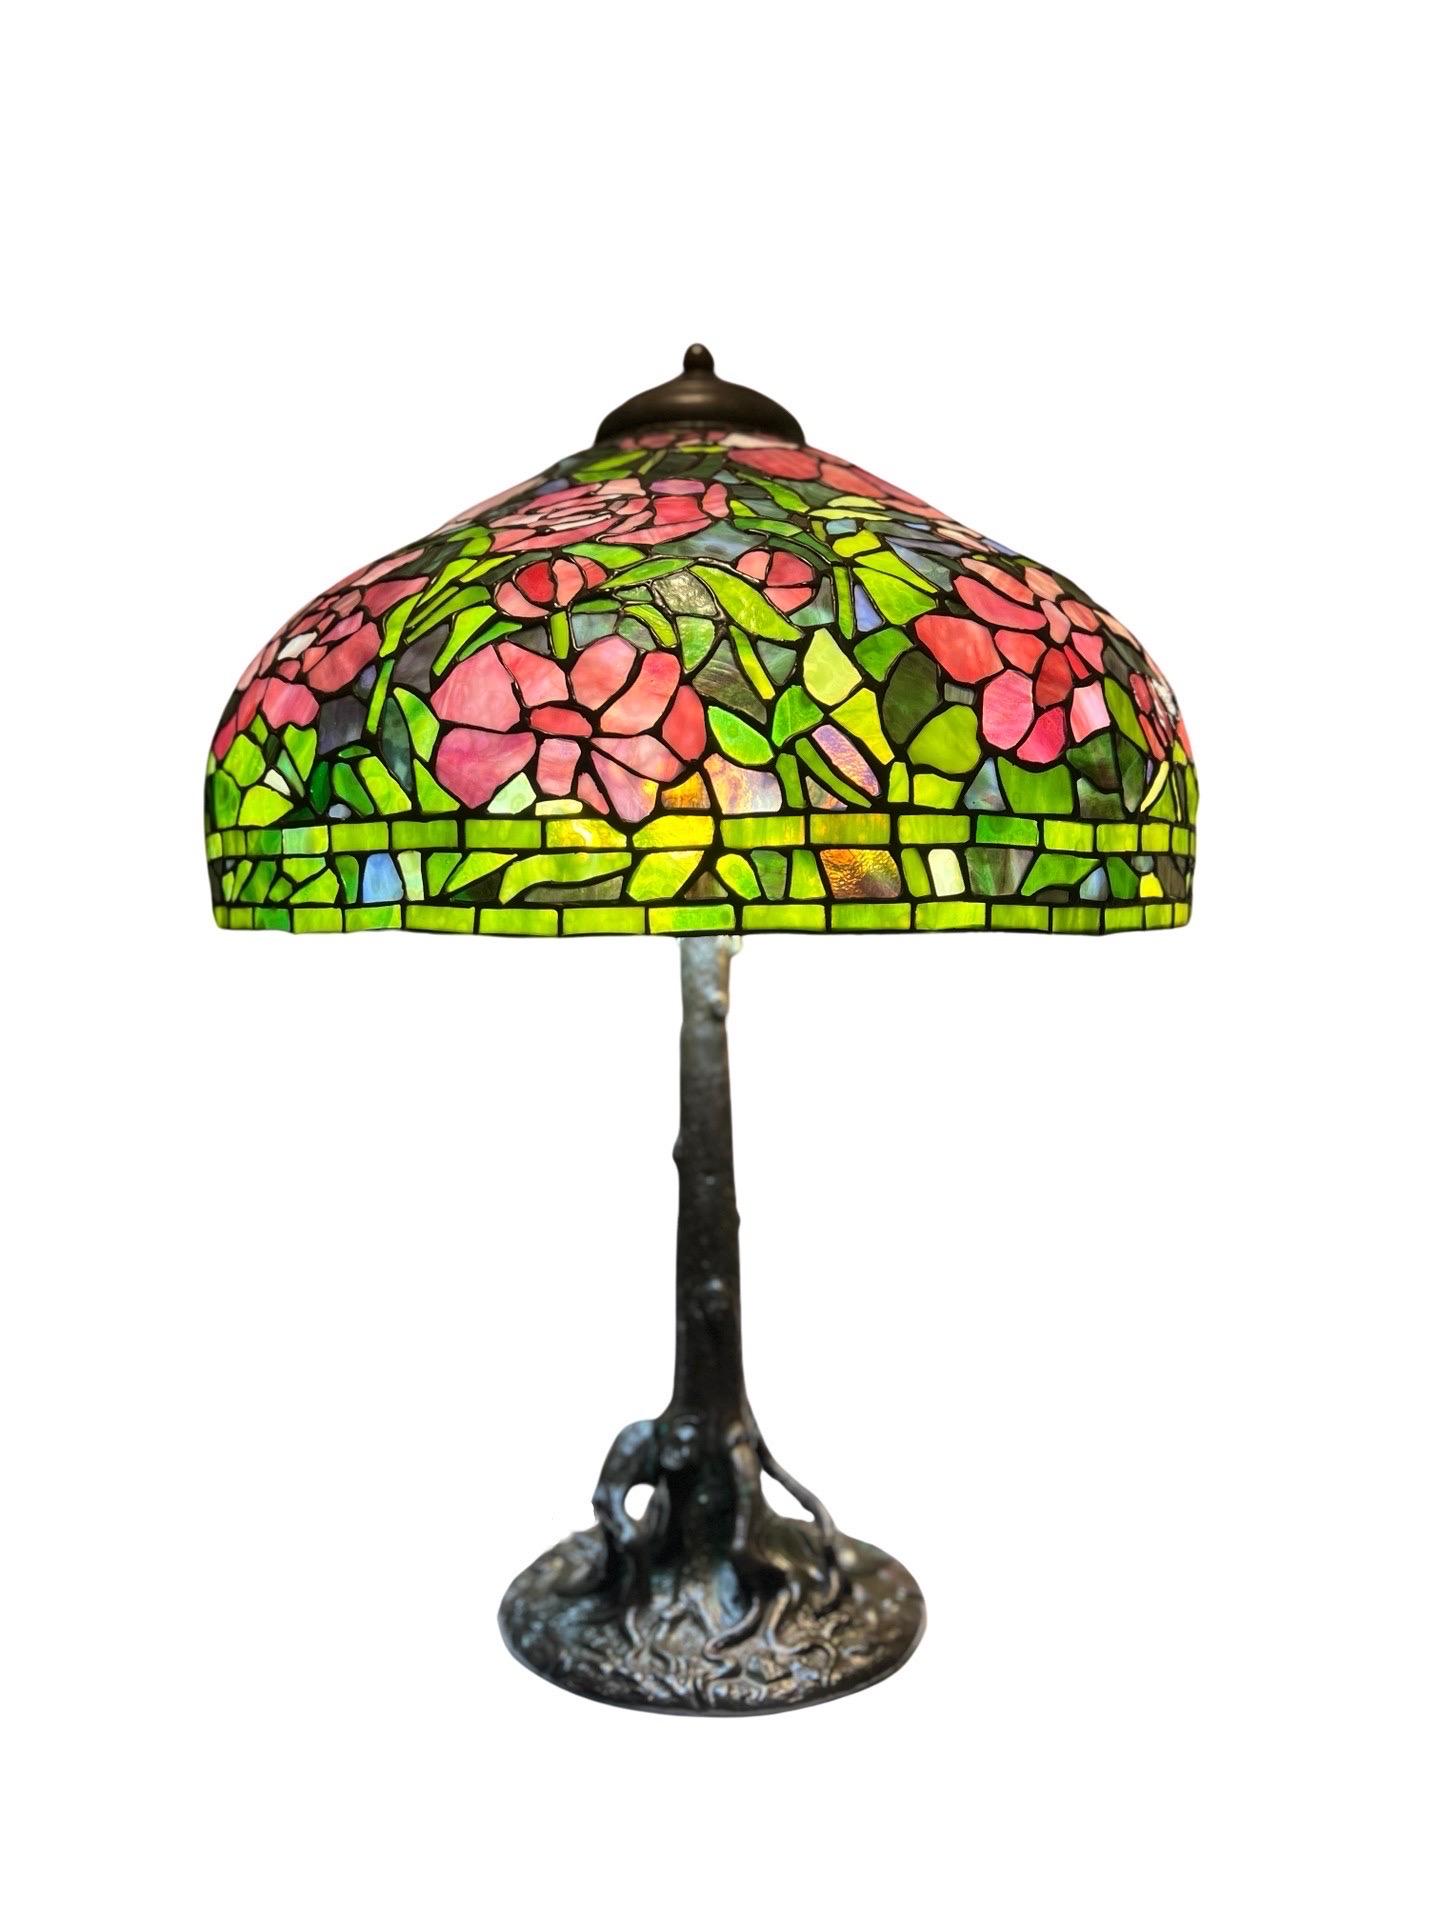 Unique Art Glass & Metal Company (New York, actif entre 1889 et 1917), vers 1915. 
Cette magnifique lampe de table en verre au plomb a été produite après l'expiration, en 1903, du brevet de Louis Comfort Tiffany sur la célèbre technique de la